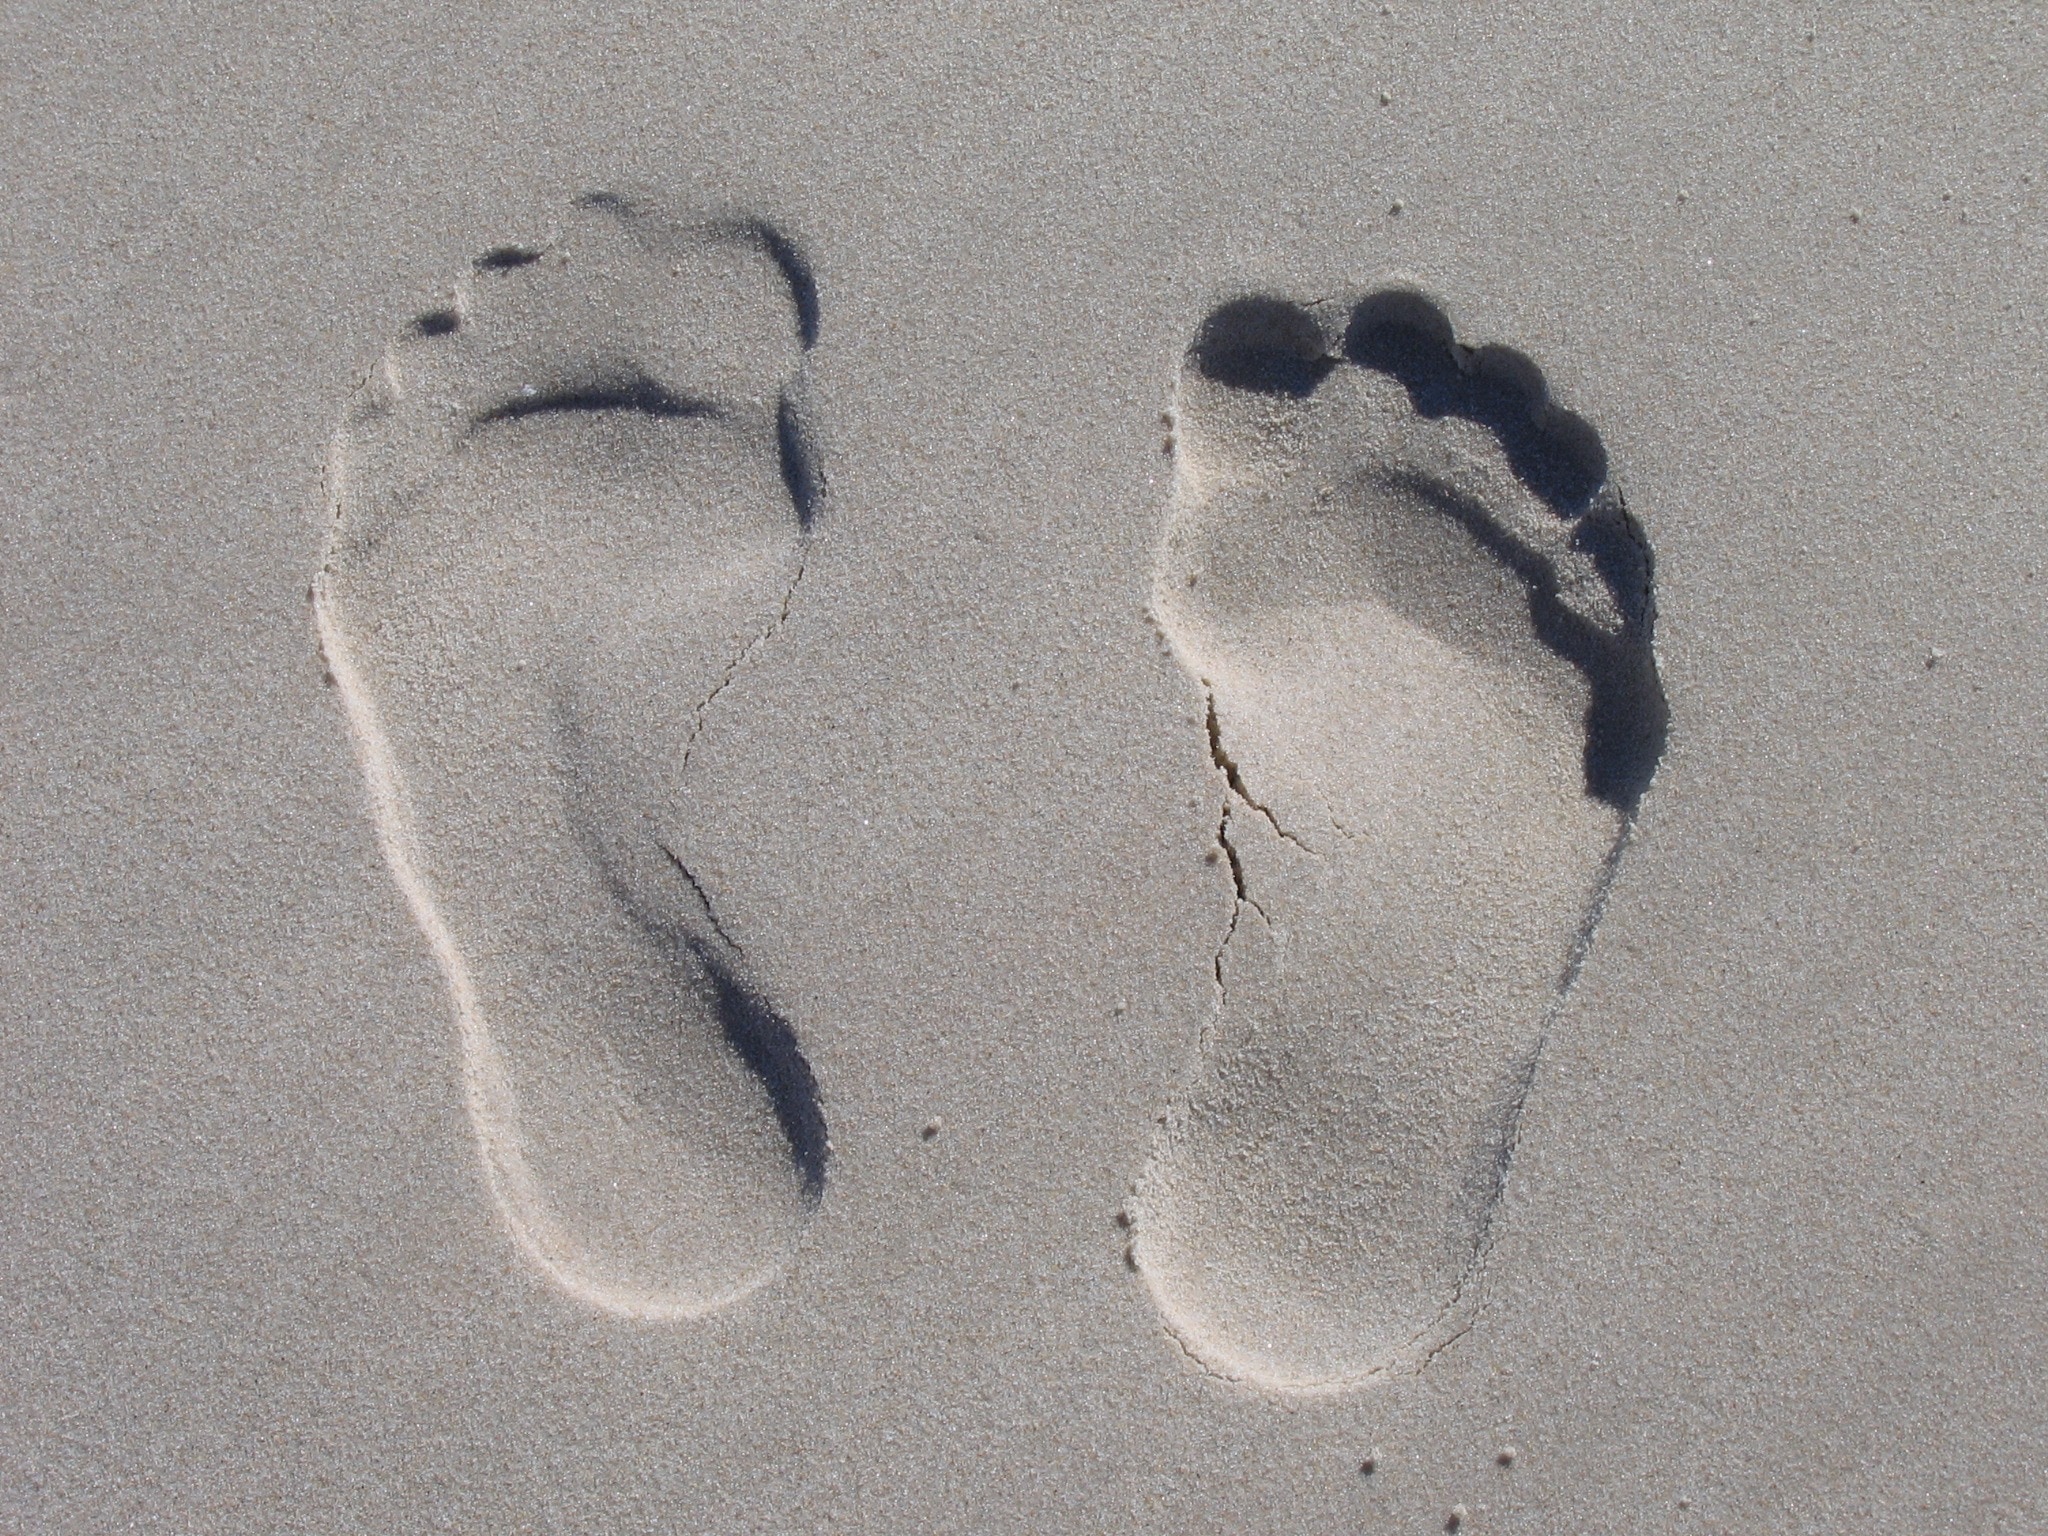 footprint on sand